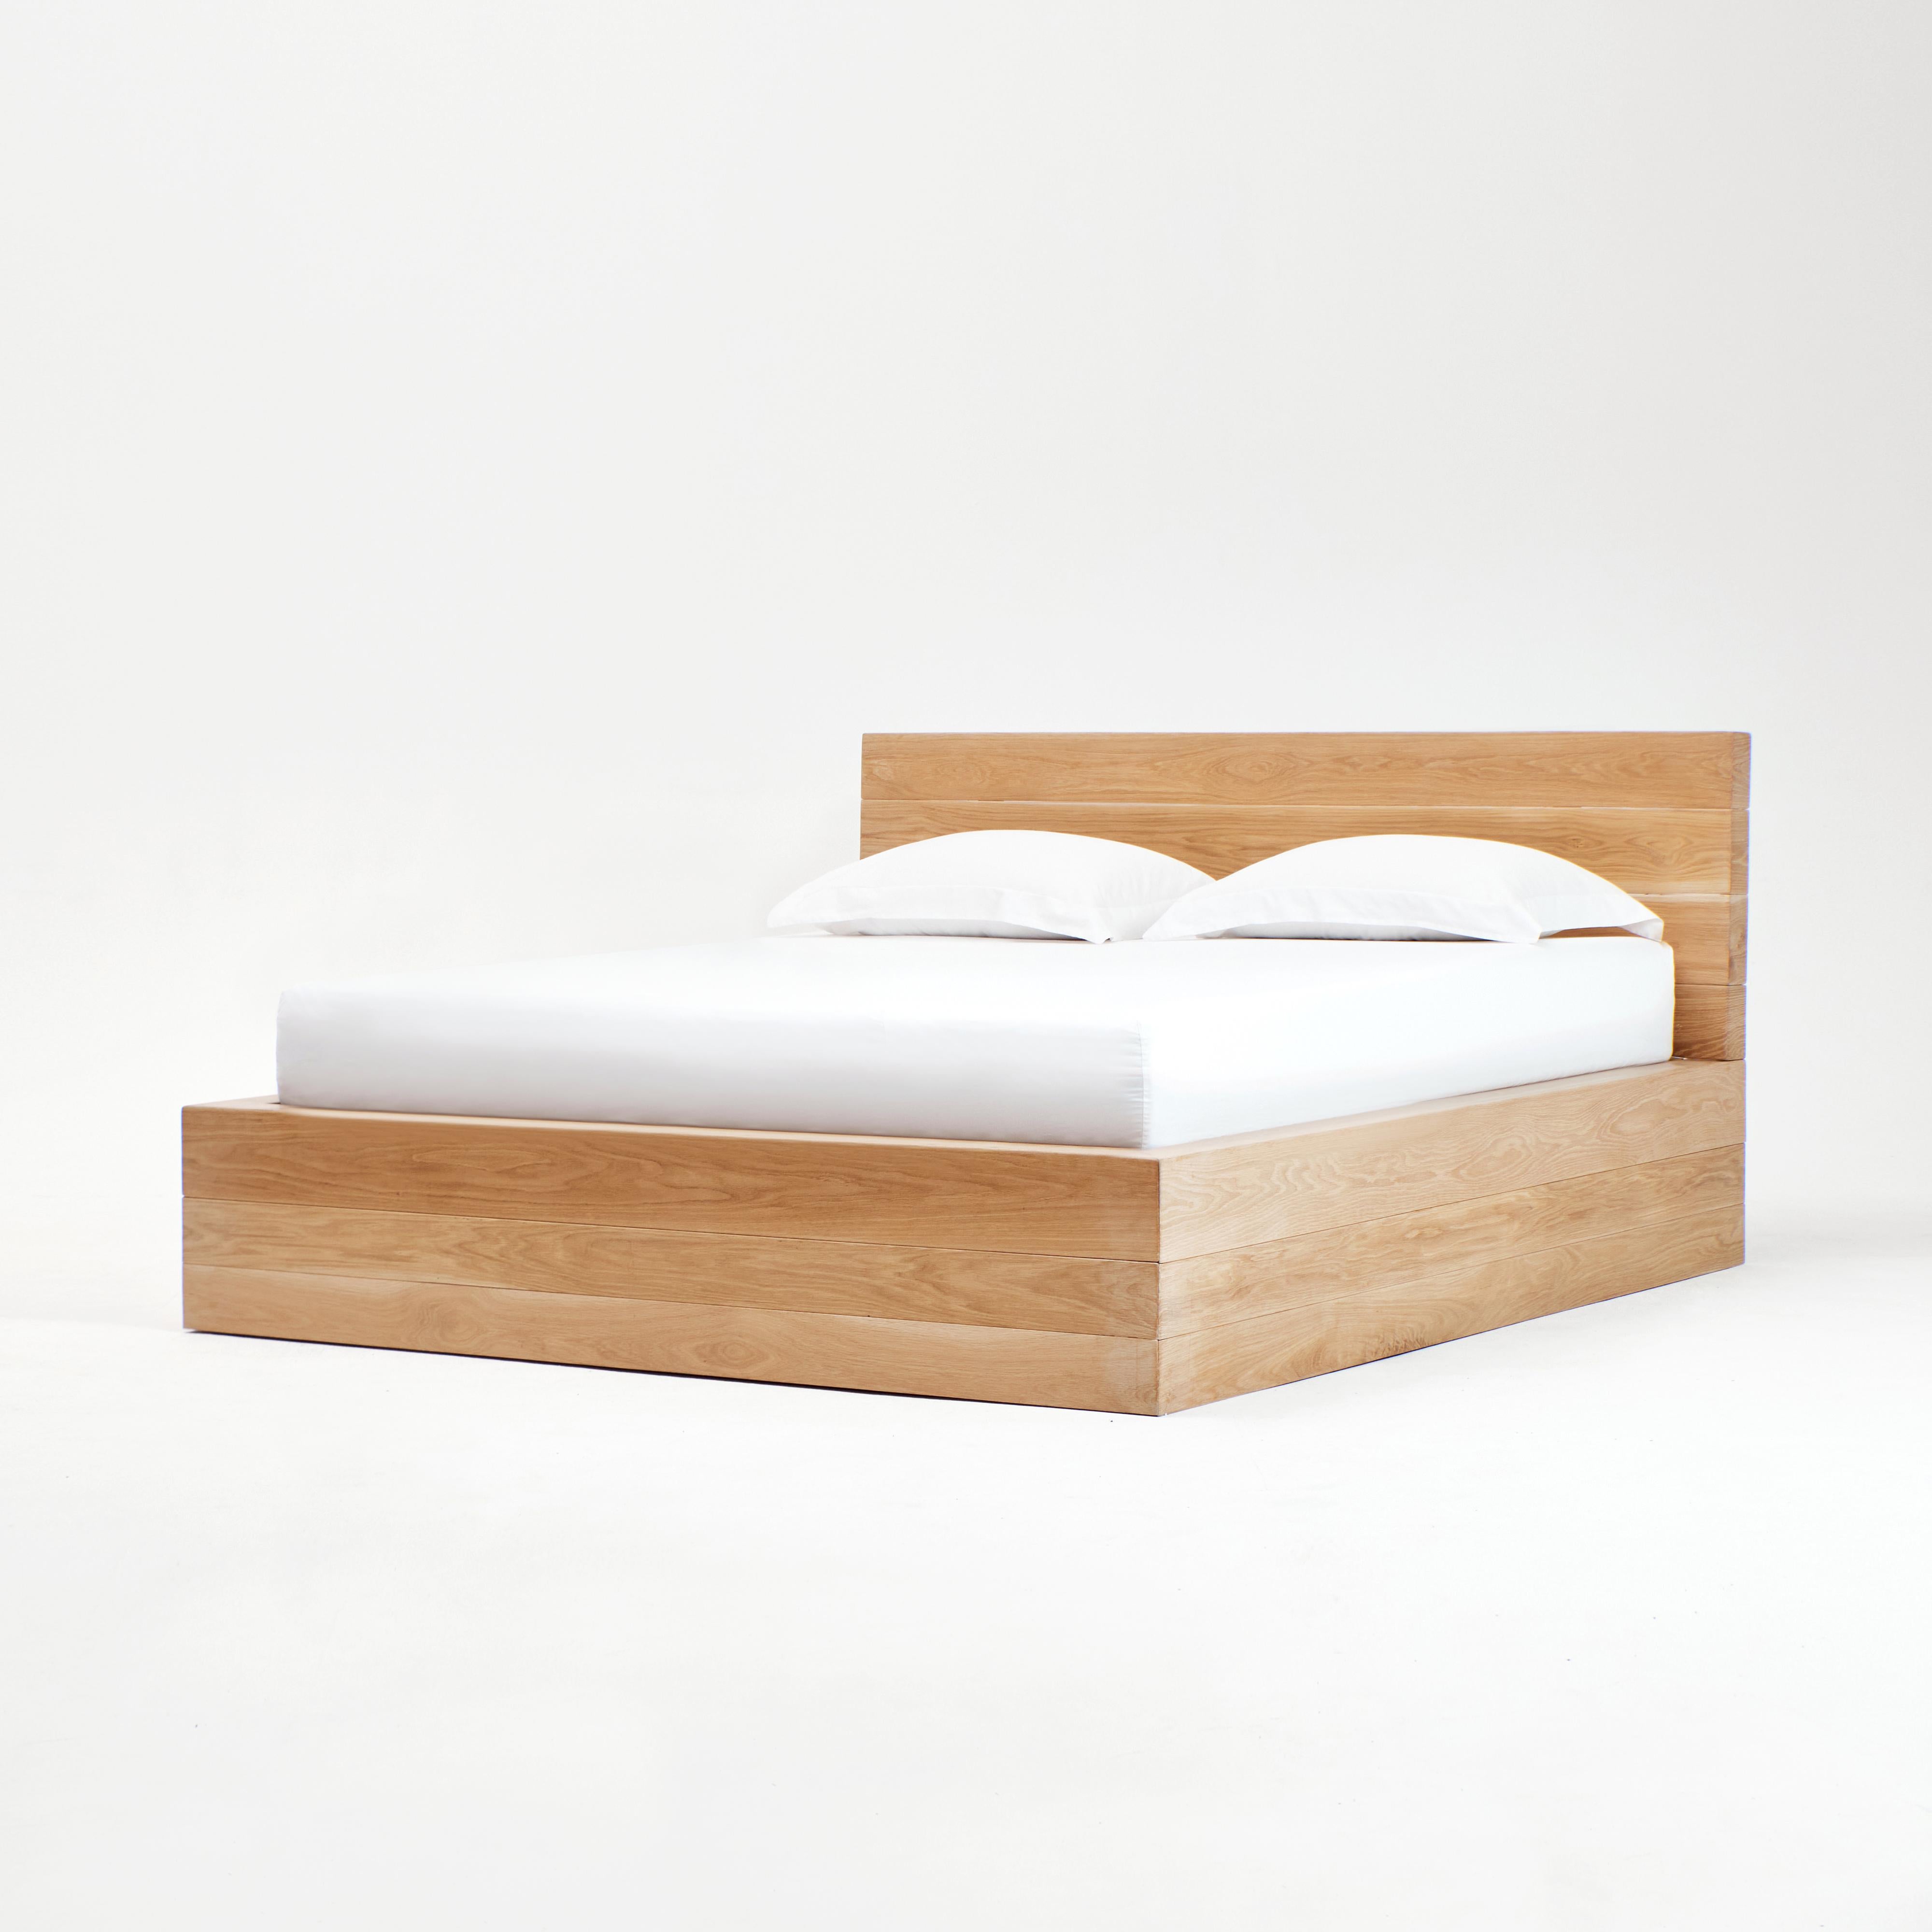 Roque Bettgestell
Entworfen von Projekt 213A im Jahr 2023

Bett und Kopfteil sind aus einzelnen massiven Eichenelementen gefertigt.
Matratze nicht enthalten.
Höhe des Kopfteils - 101 cm

Die Abbildung zeigt das Roque Bett mit einer